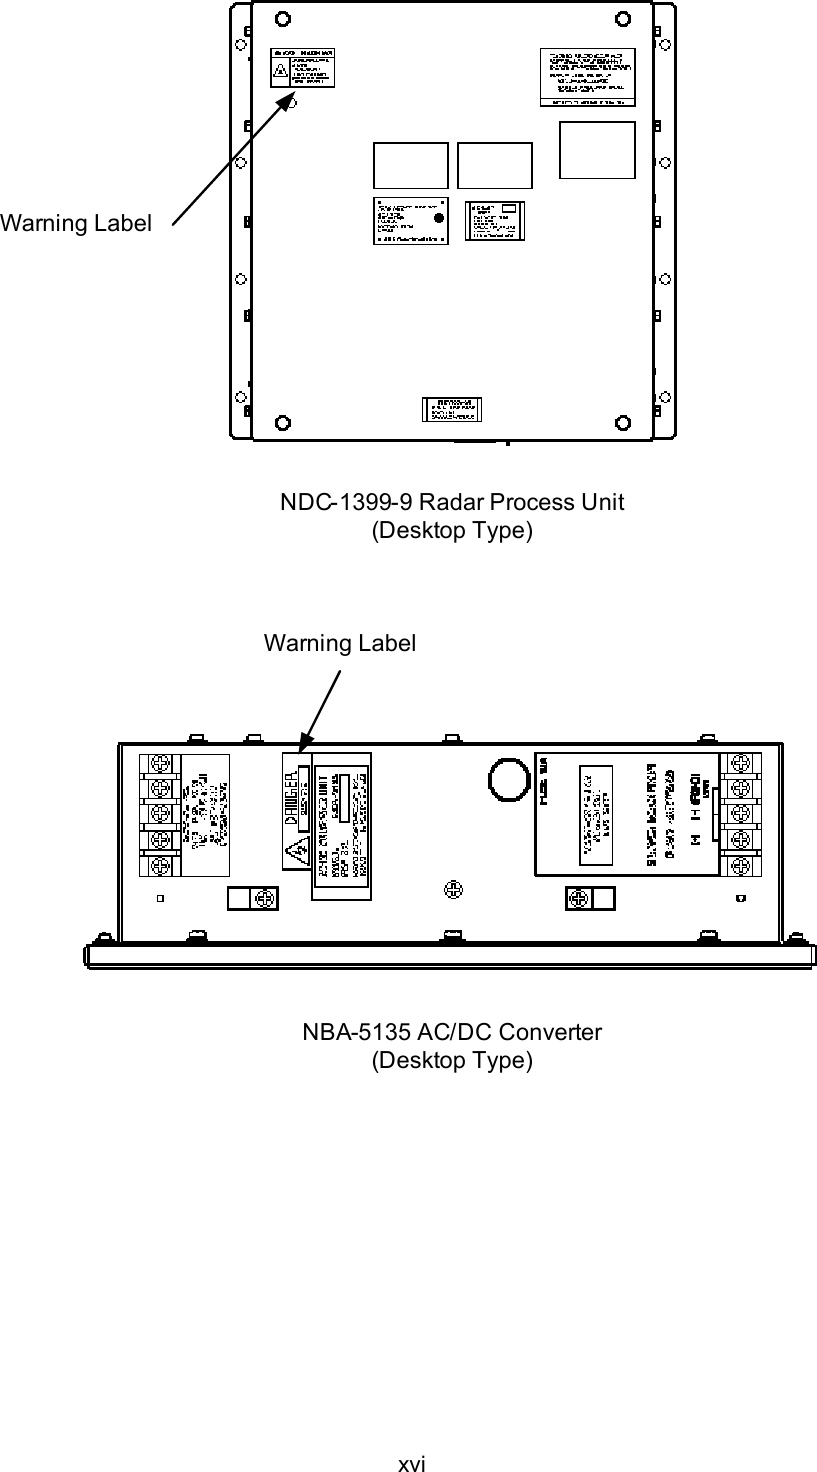 xviNBA-5135 AC/DC Converter(Desktop Type)NDC-1399-9 Radar Process Unit(Desktop Type)Warning LabelWarning Label